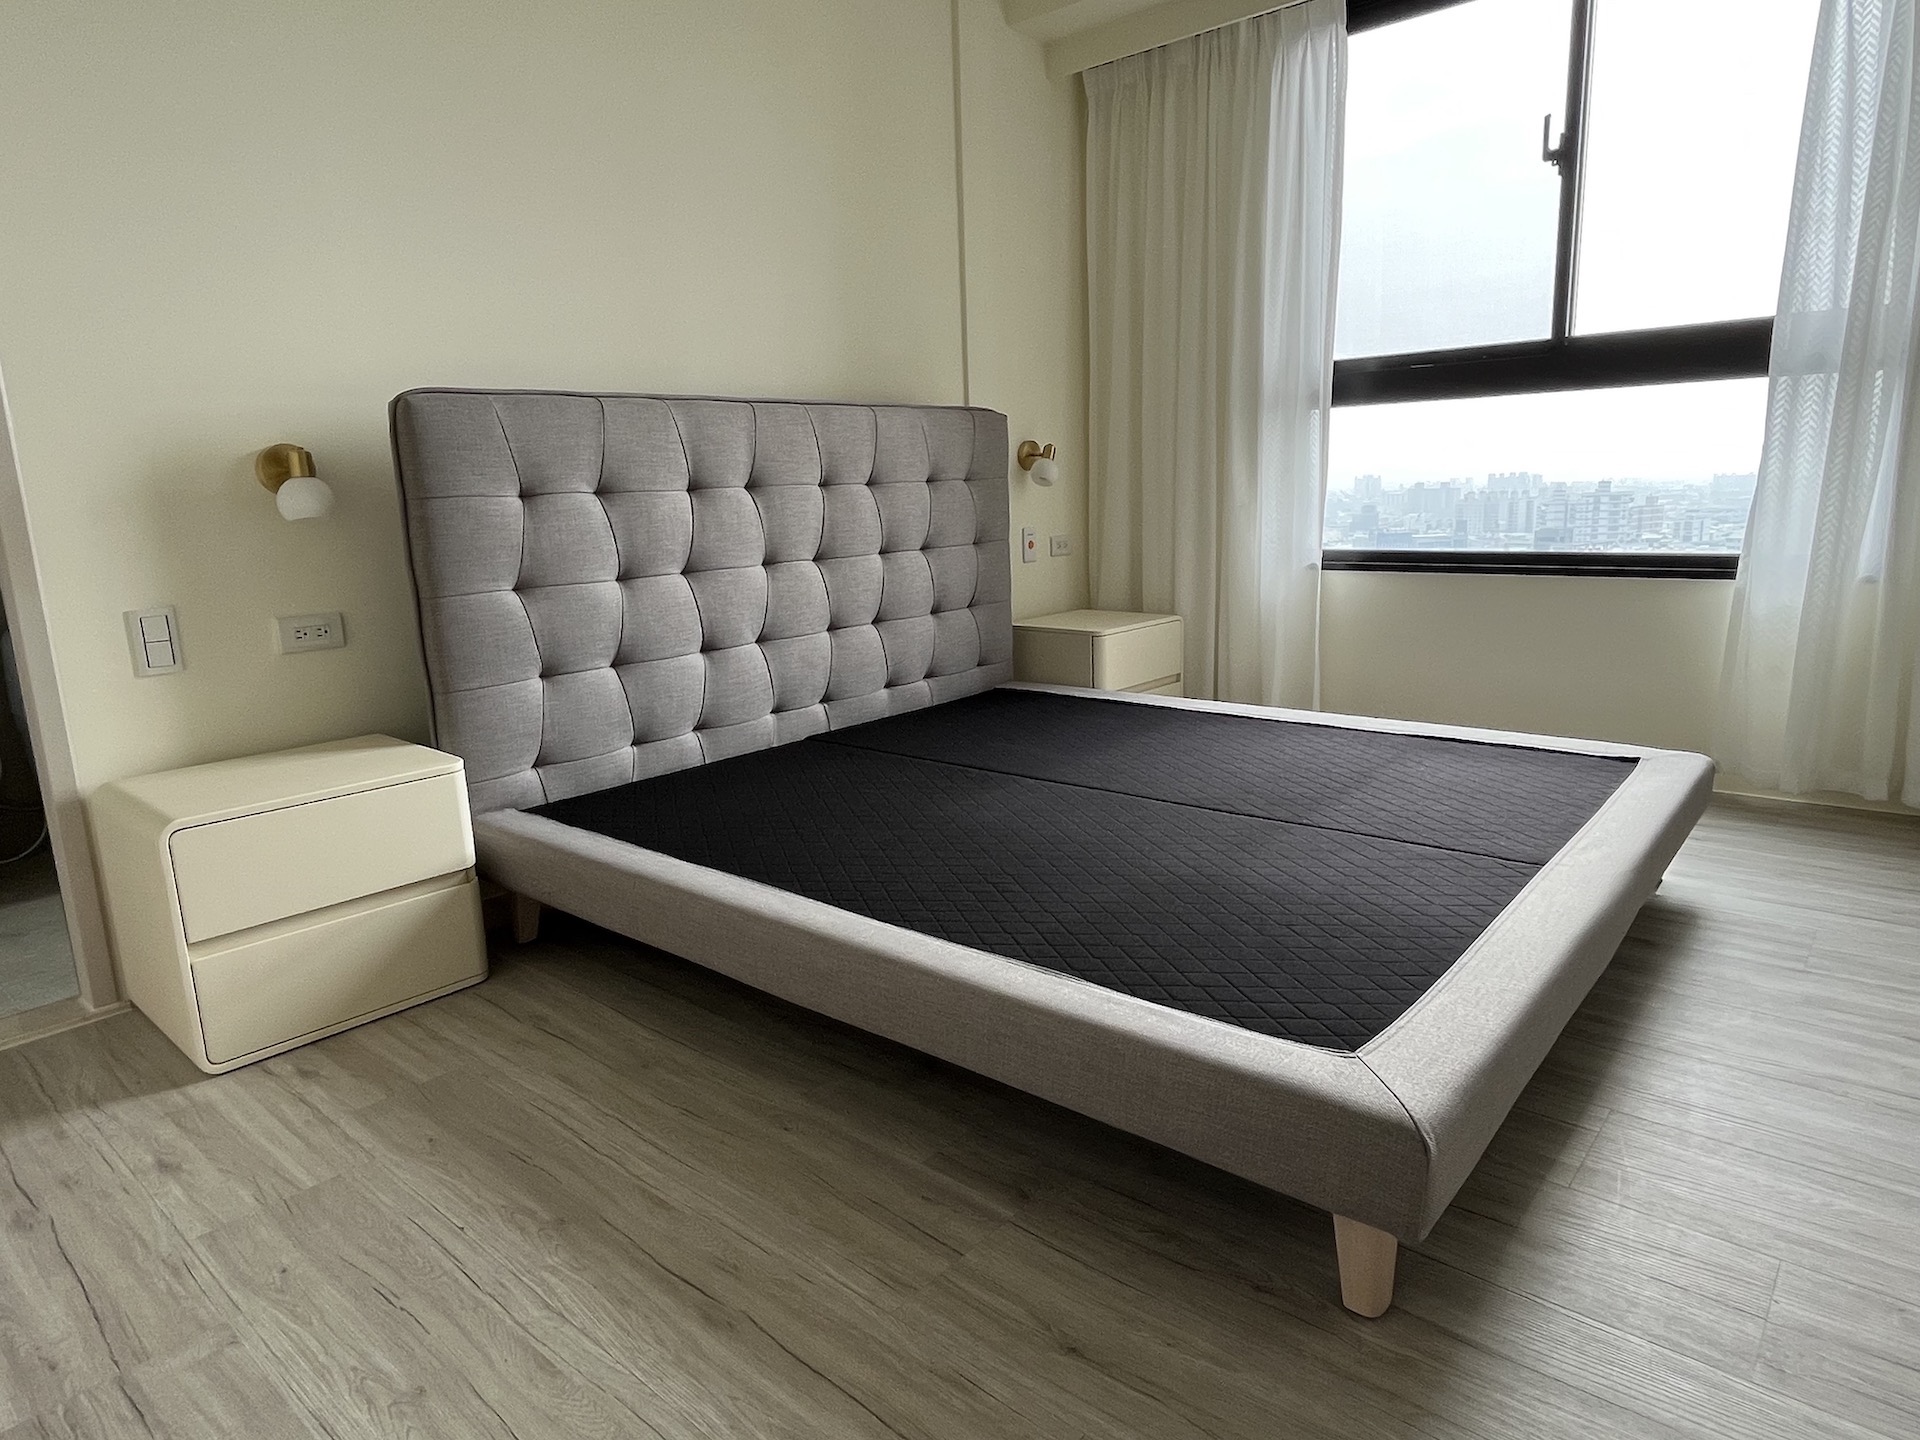 【客戶案例分享】台中東區雙人床組訂製